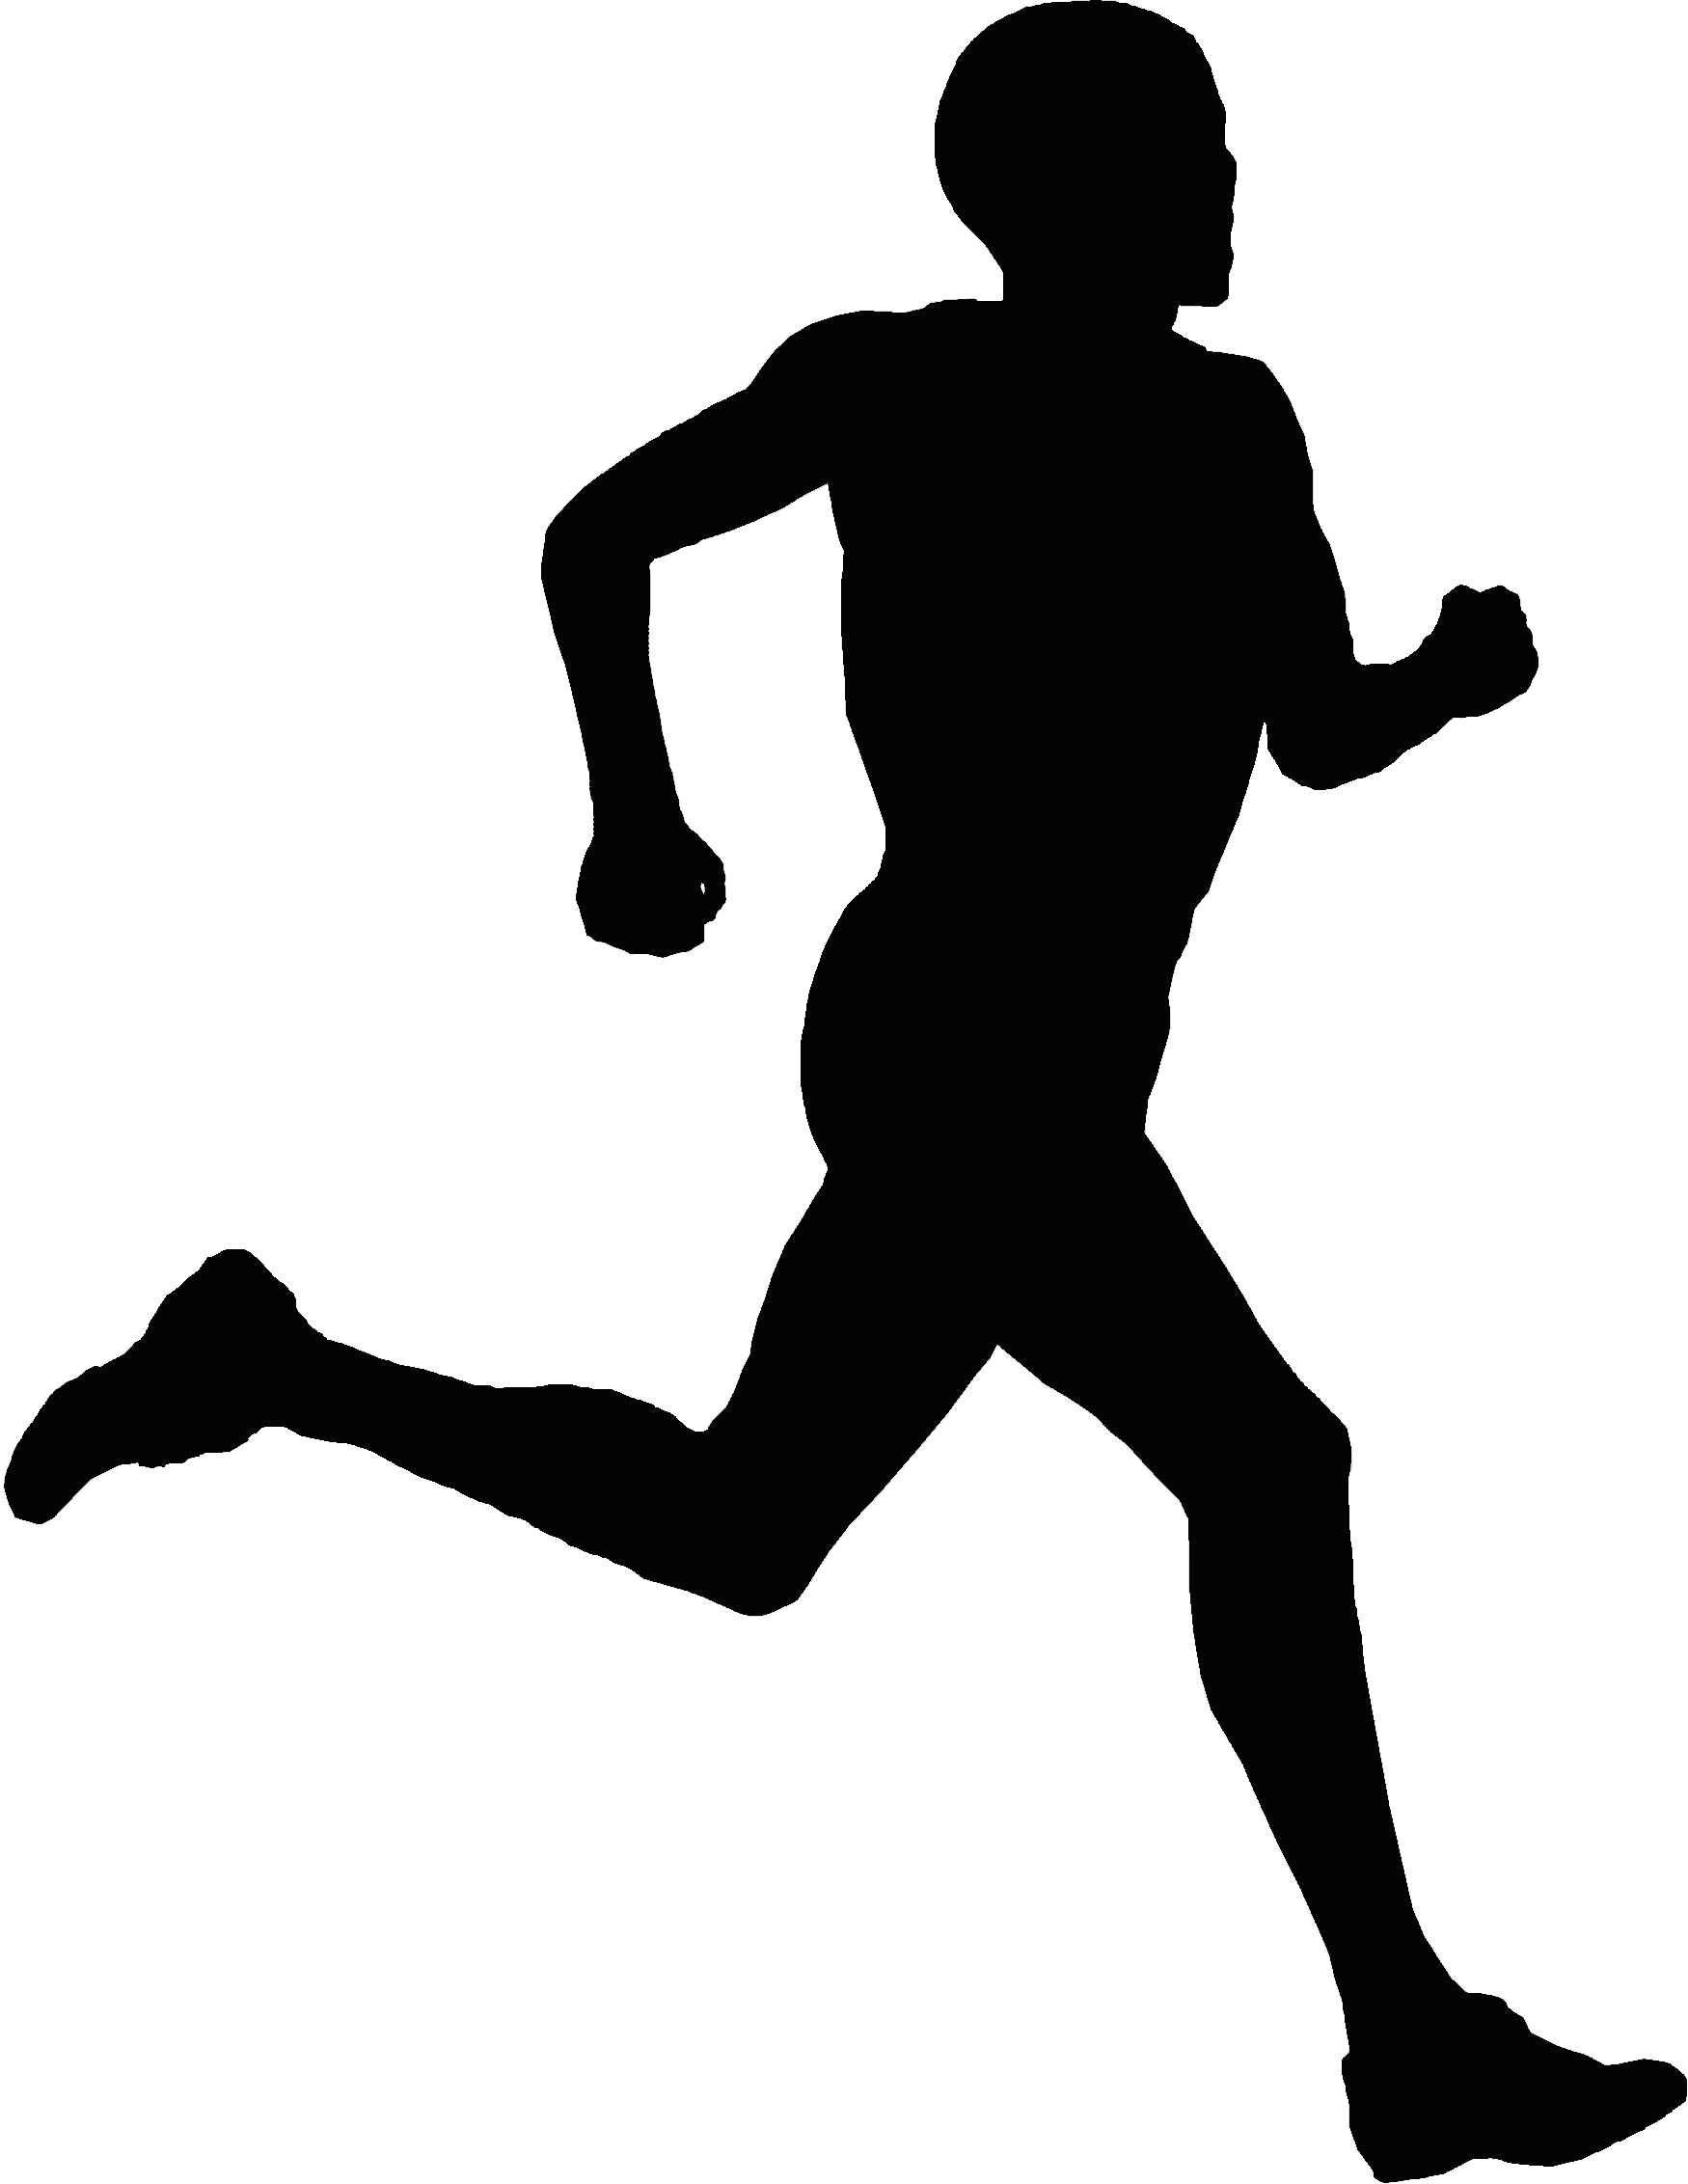 Black Man Running Logo - Running logo png 3 » PNG Image